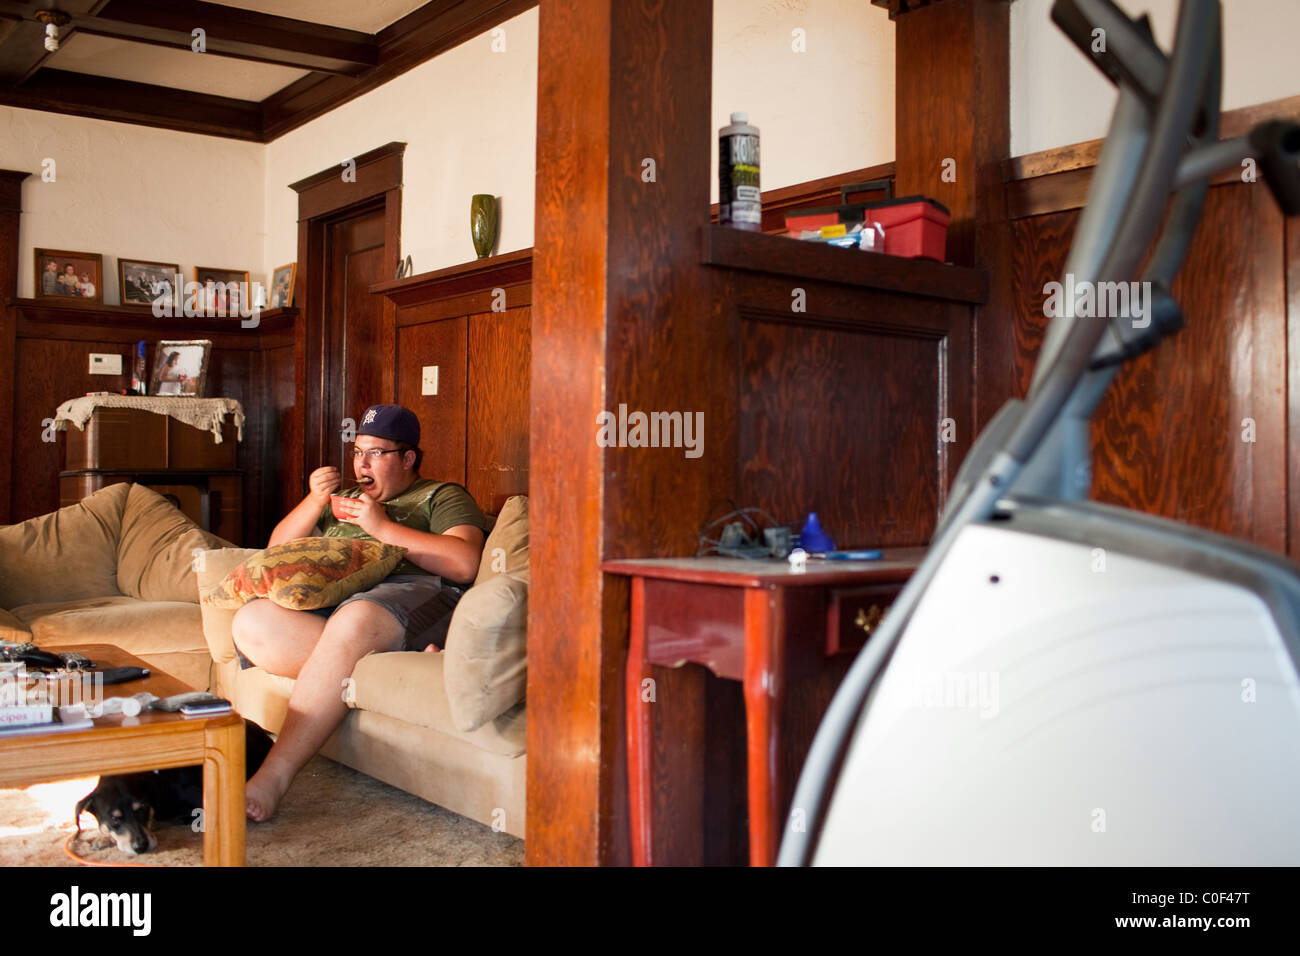 La Grange, California, Stati Uniti. American Teen mangia la sua colazione sul divano mentre si guarda la TV. Foto Stock